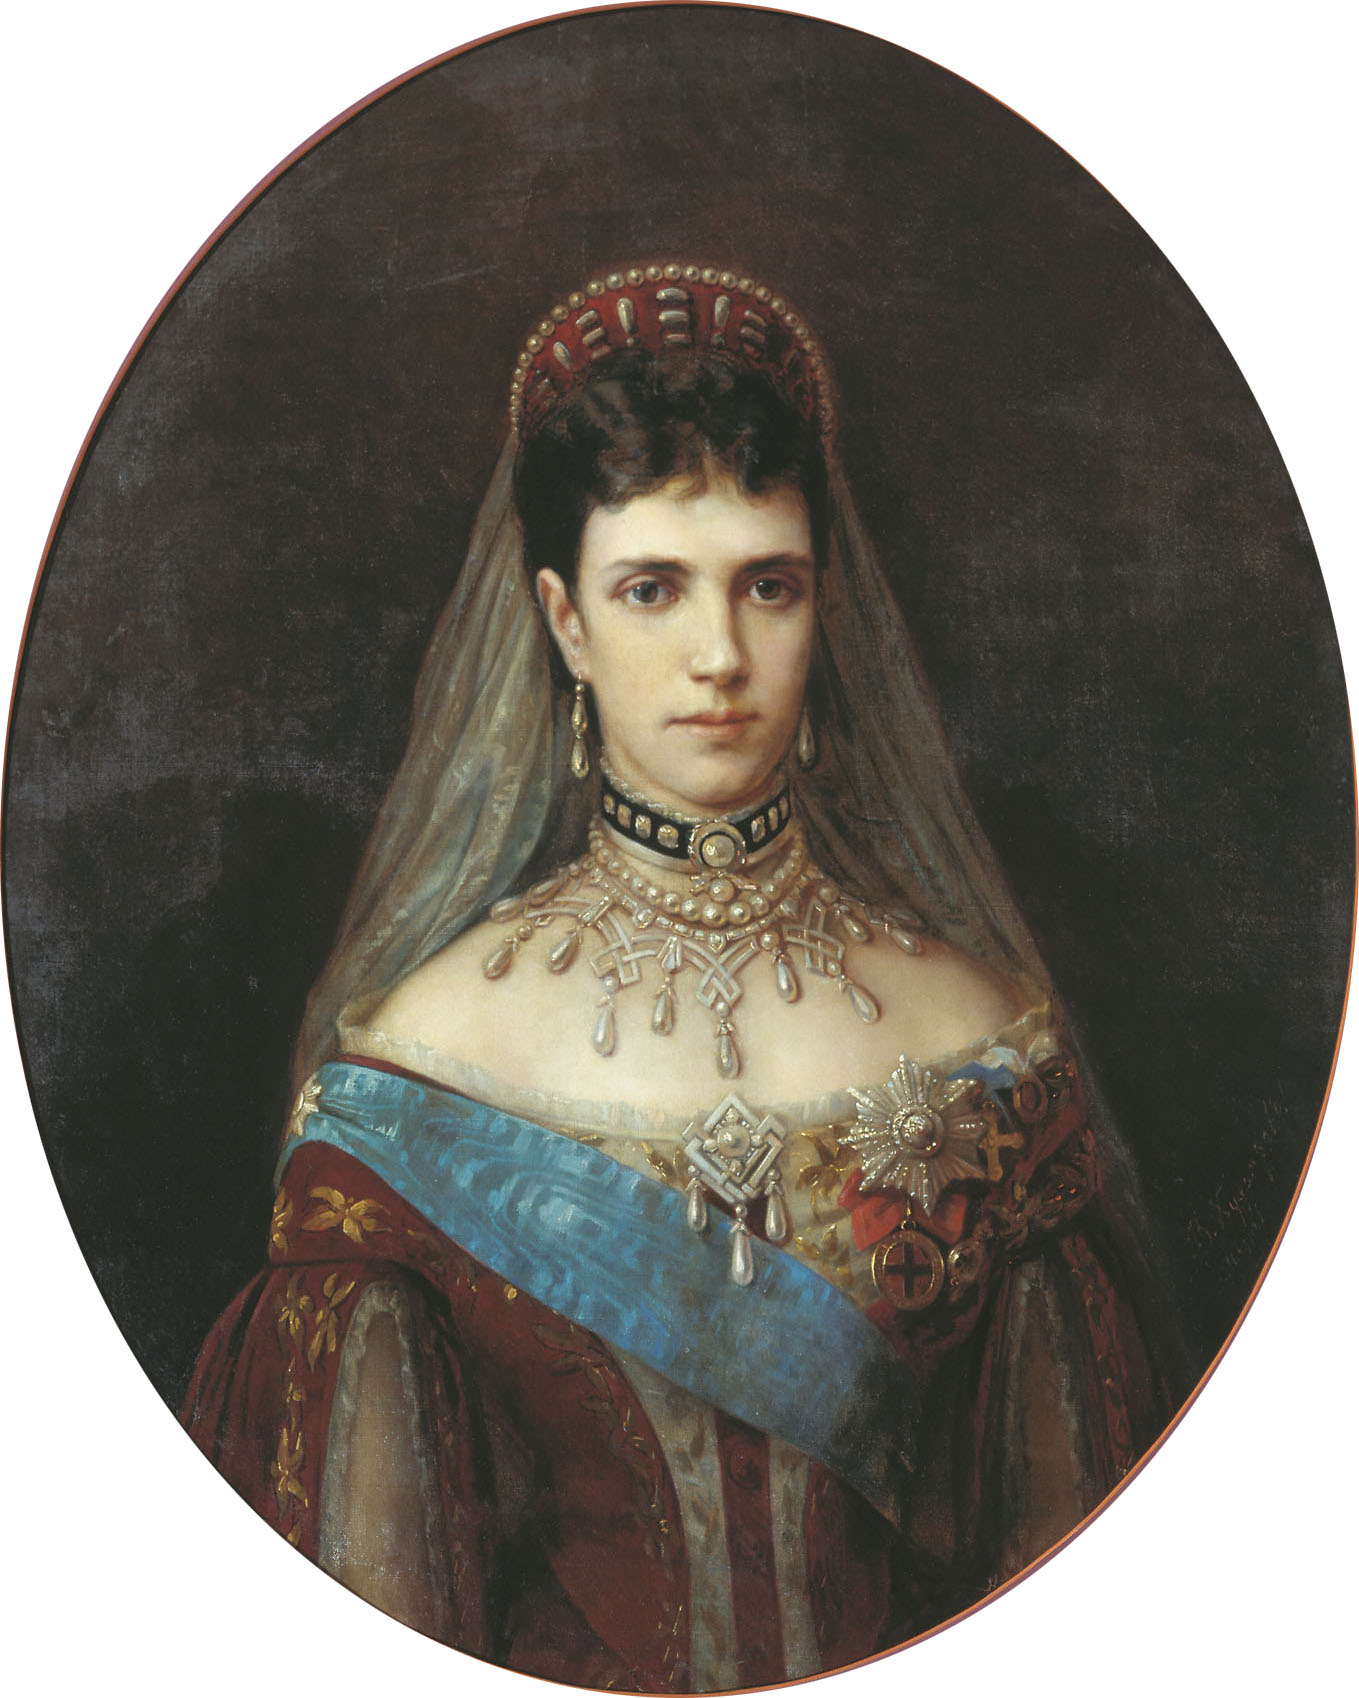 Худояров. Портрет императрицы Марии Федоровны, жены императора Александра III